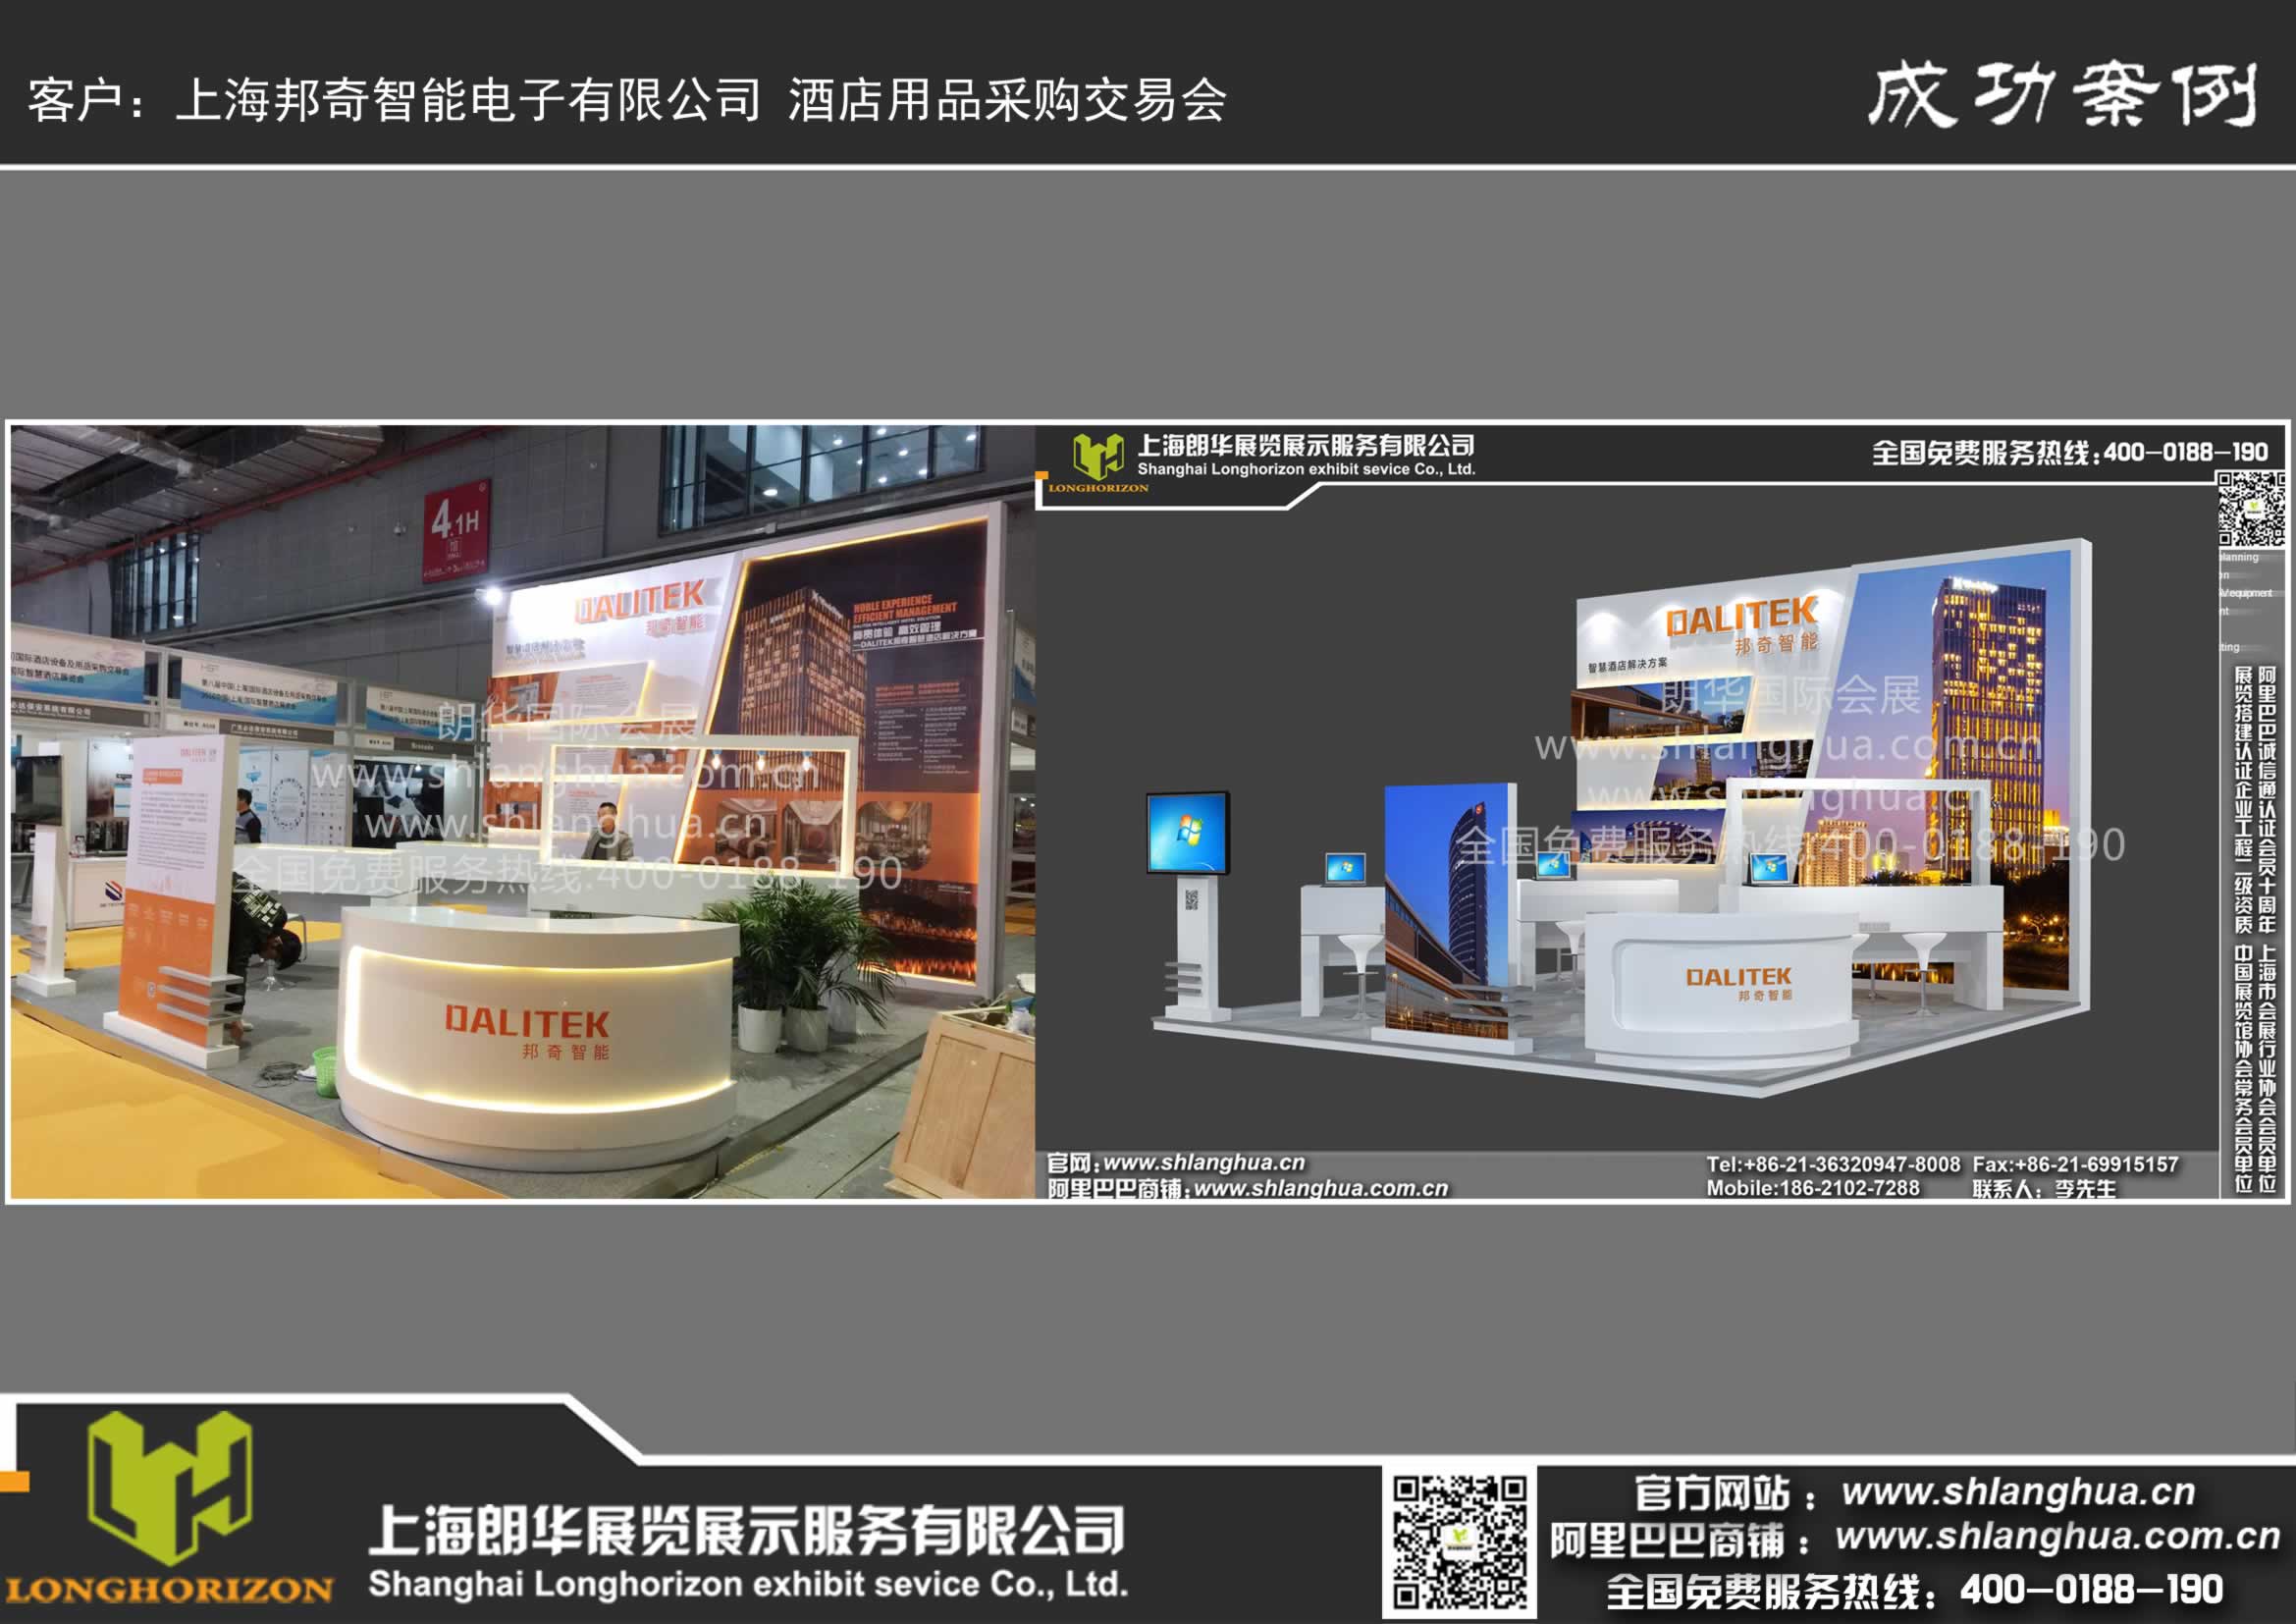 上海邦奇智能电子有限公司 酒店用品采购交易会